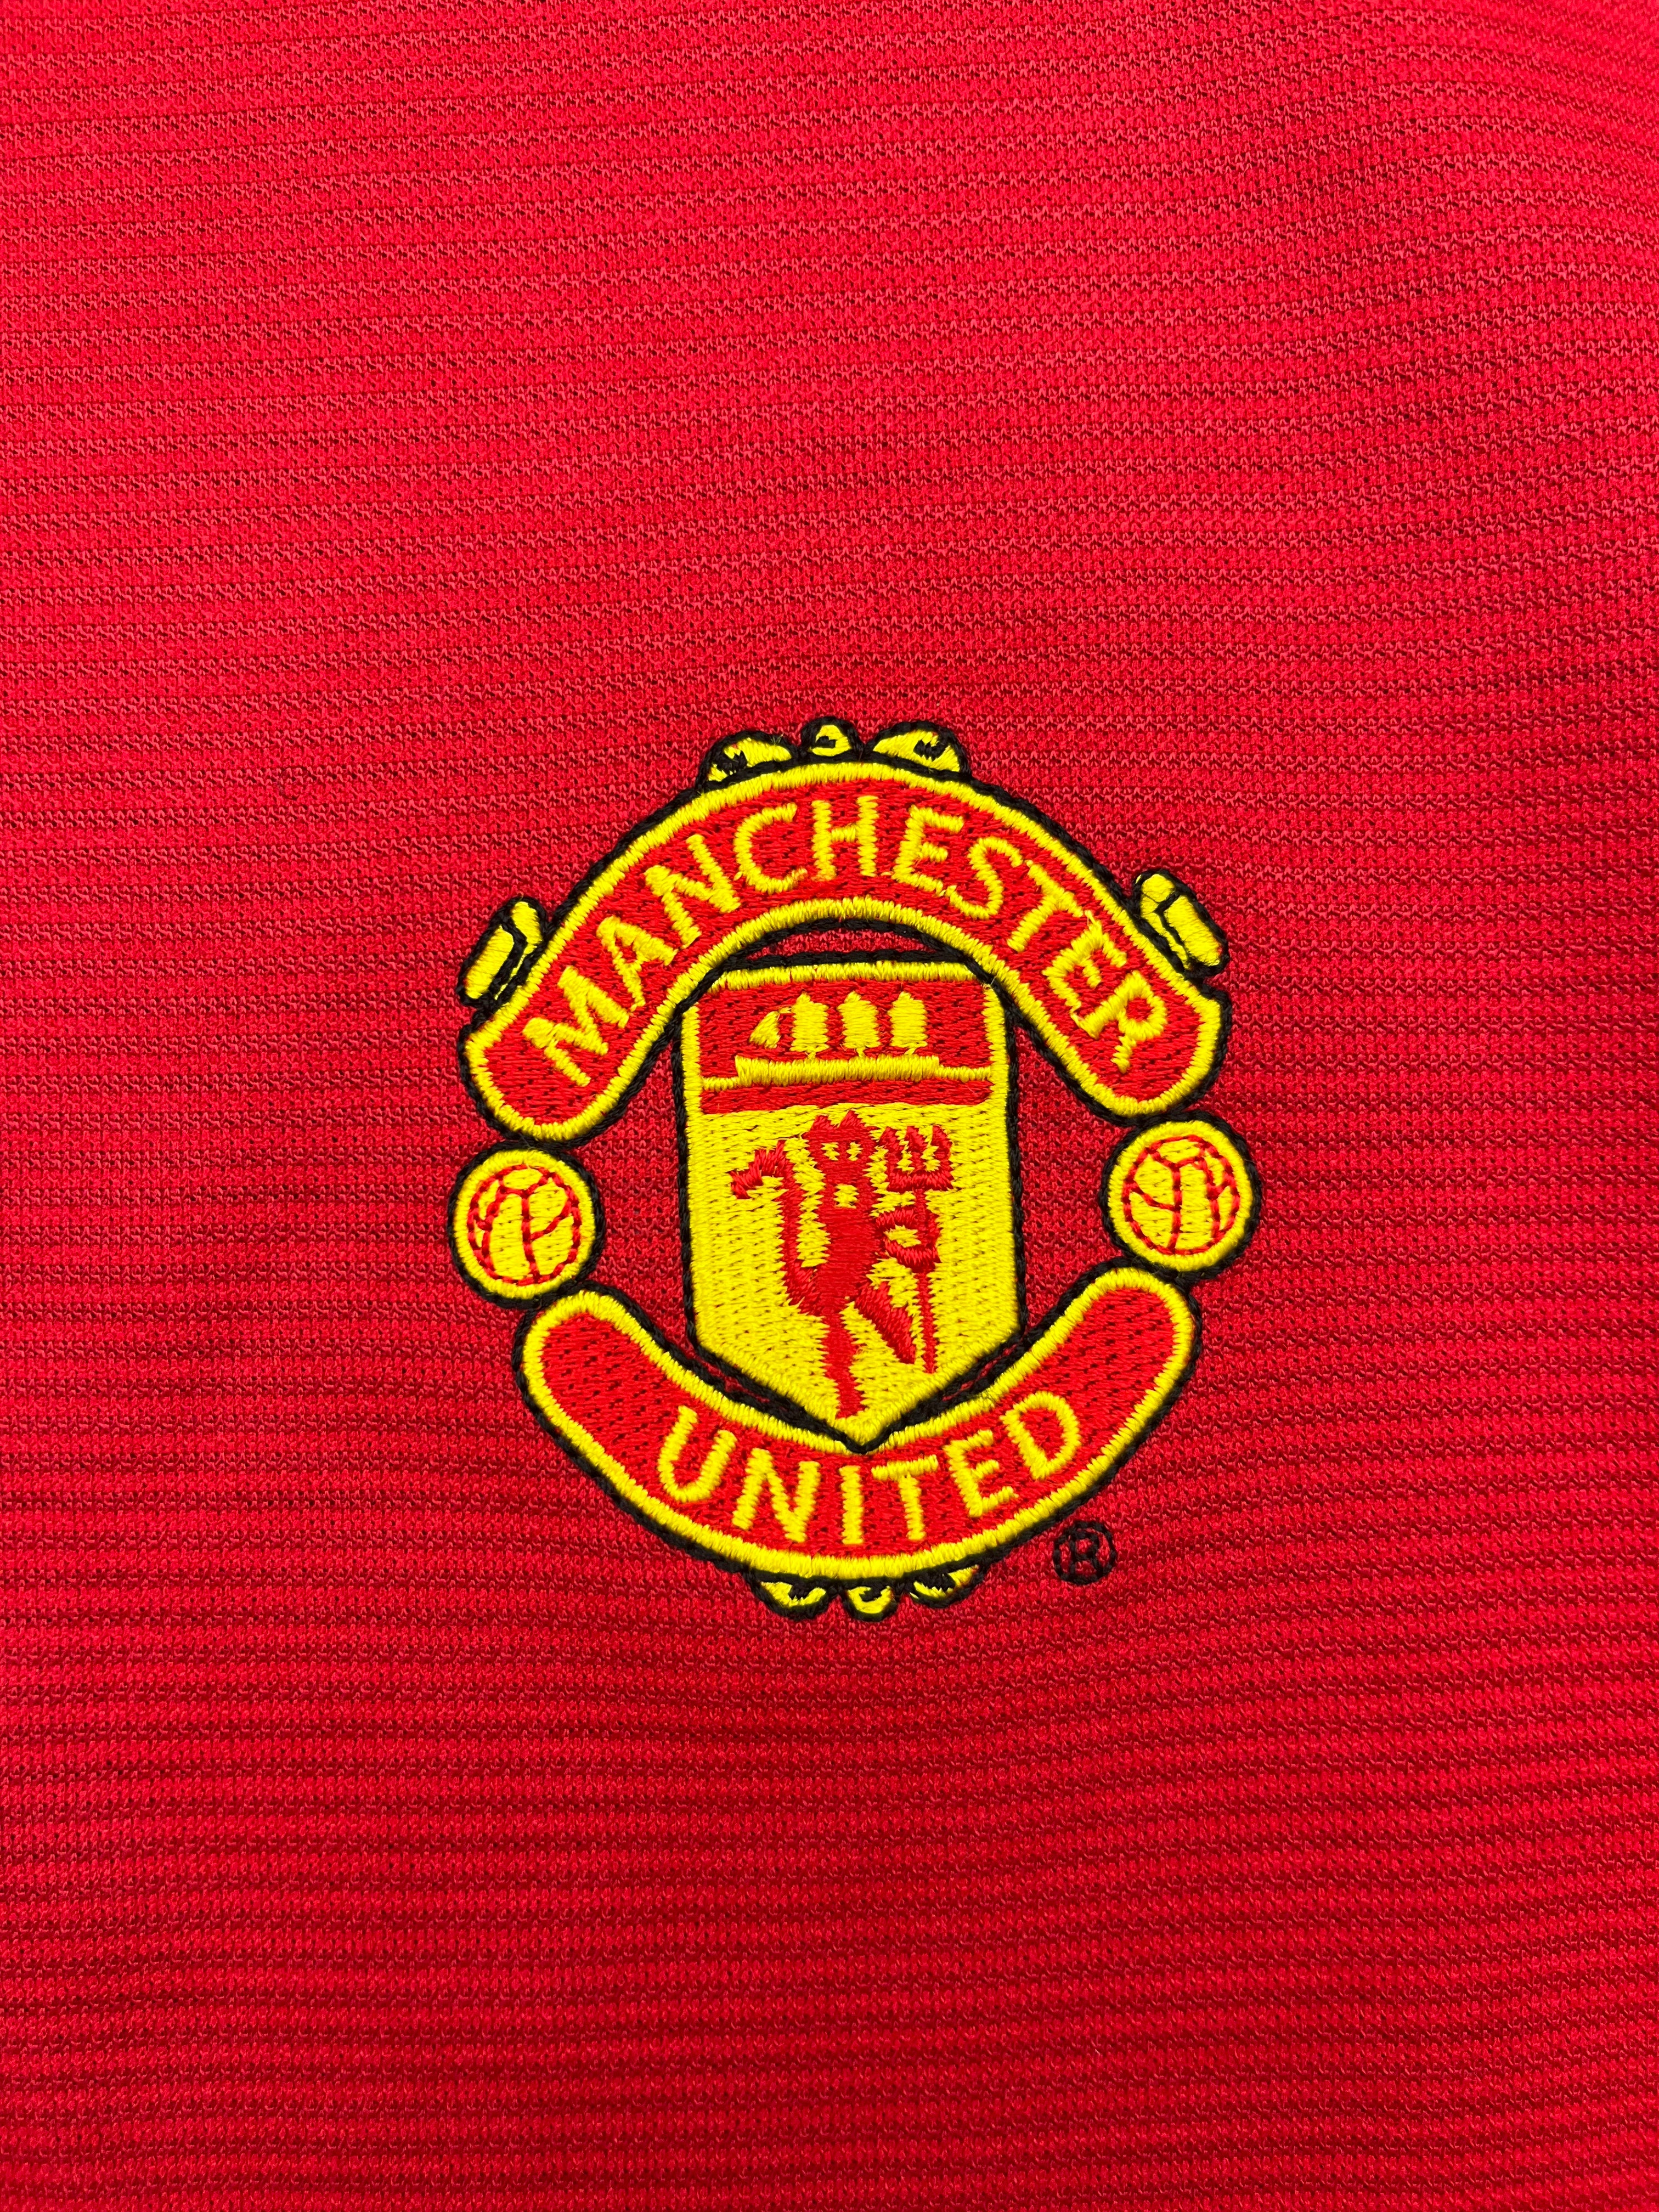 Camiseta local del Manchester United 2000/02 (XL) 8.5/10